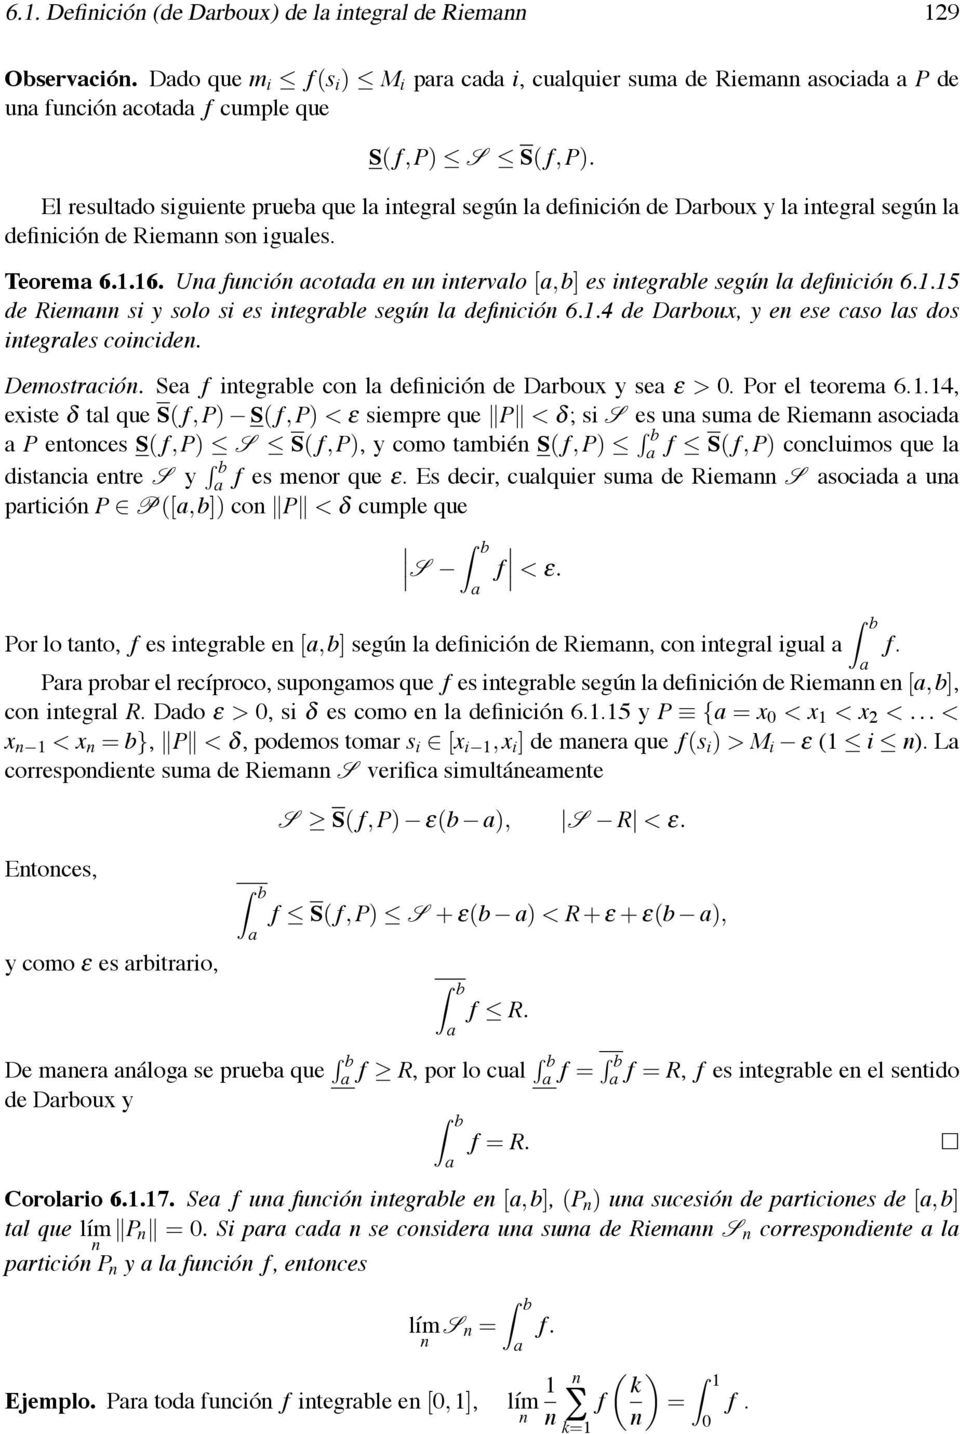 1.4 de Drboux, y e ese cso ls dos itegrles coicide. Demostrció. Se f itegrble co l defiició de Drboux y se ε >. Por el teorem 6.1.14, existe δ tl que S( f,p) S( f,p) < ε siempre que P < δ; si S es u sum de Riem socid P etoces S( f,p) S S( f,p), y como tmbié S( f,p) f S( f,p) cocluimos que l distci etre S y f es meor que ε.